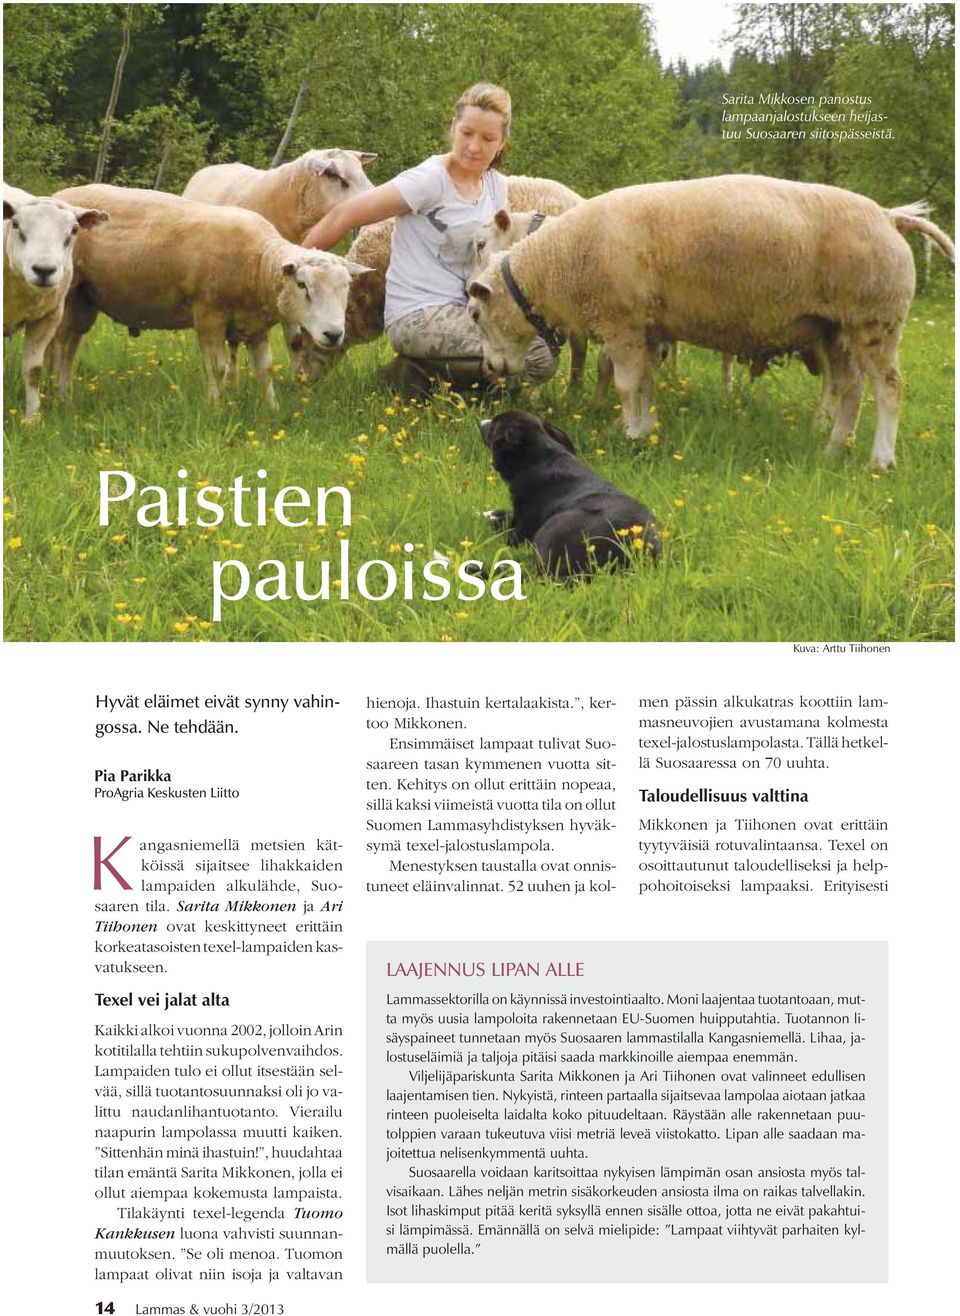 Sarita Mikkonen ja Ari Tiihonen ovat keskittyneet erittäin korkeatasoisten texel-lampaiden kasvatukseen. LAAJENNUS LIPAN ALLE hienoja. Ihastuin kertalaakista., kertoo Mikkonen.